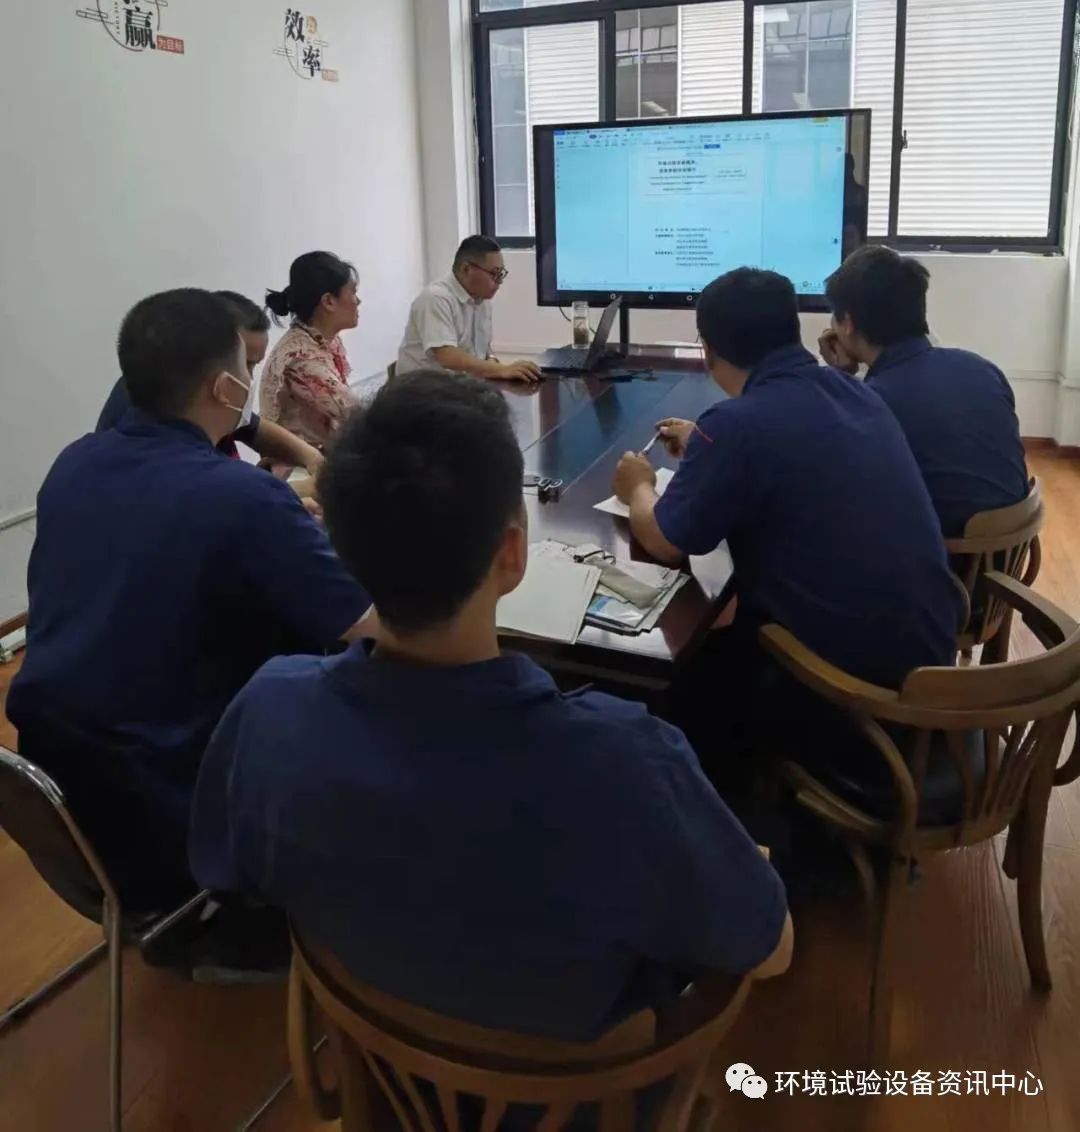 安徽奥科总公司组织技术培训会